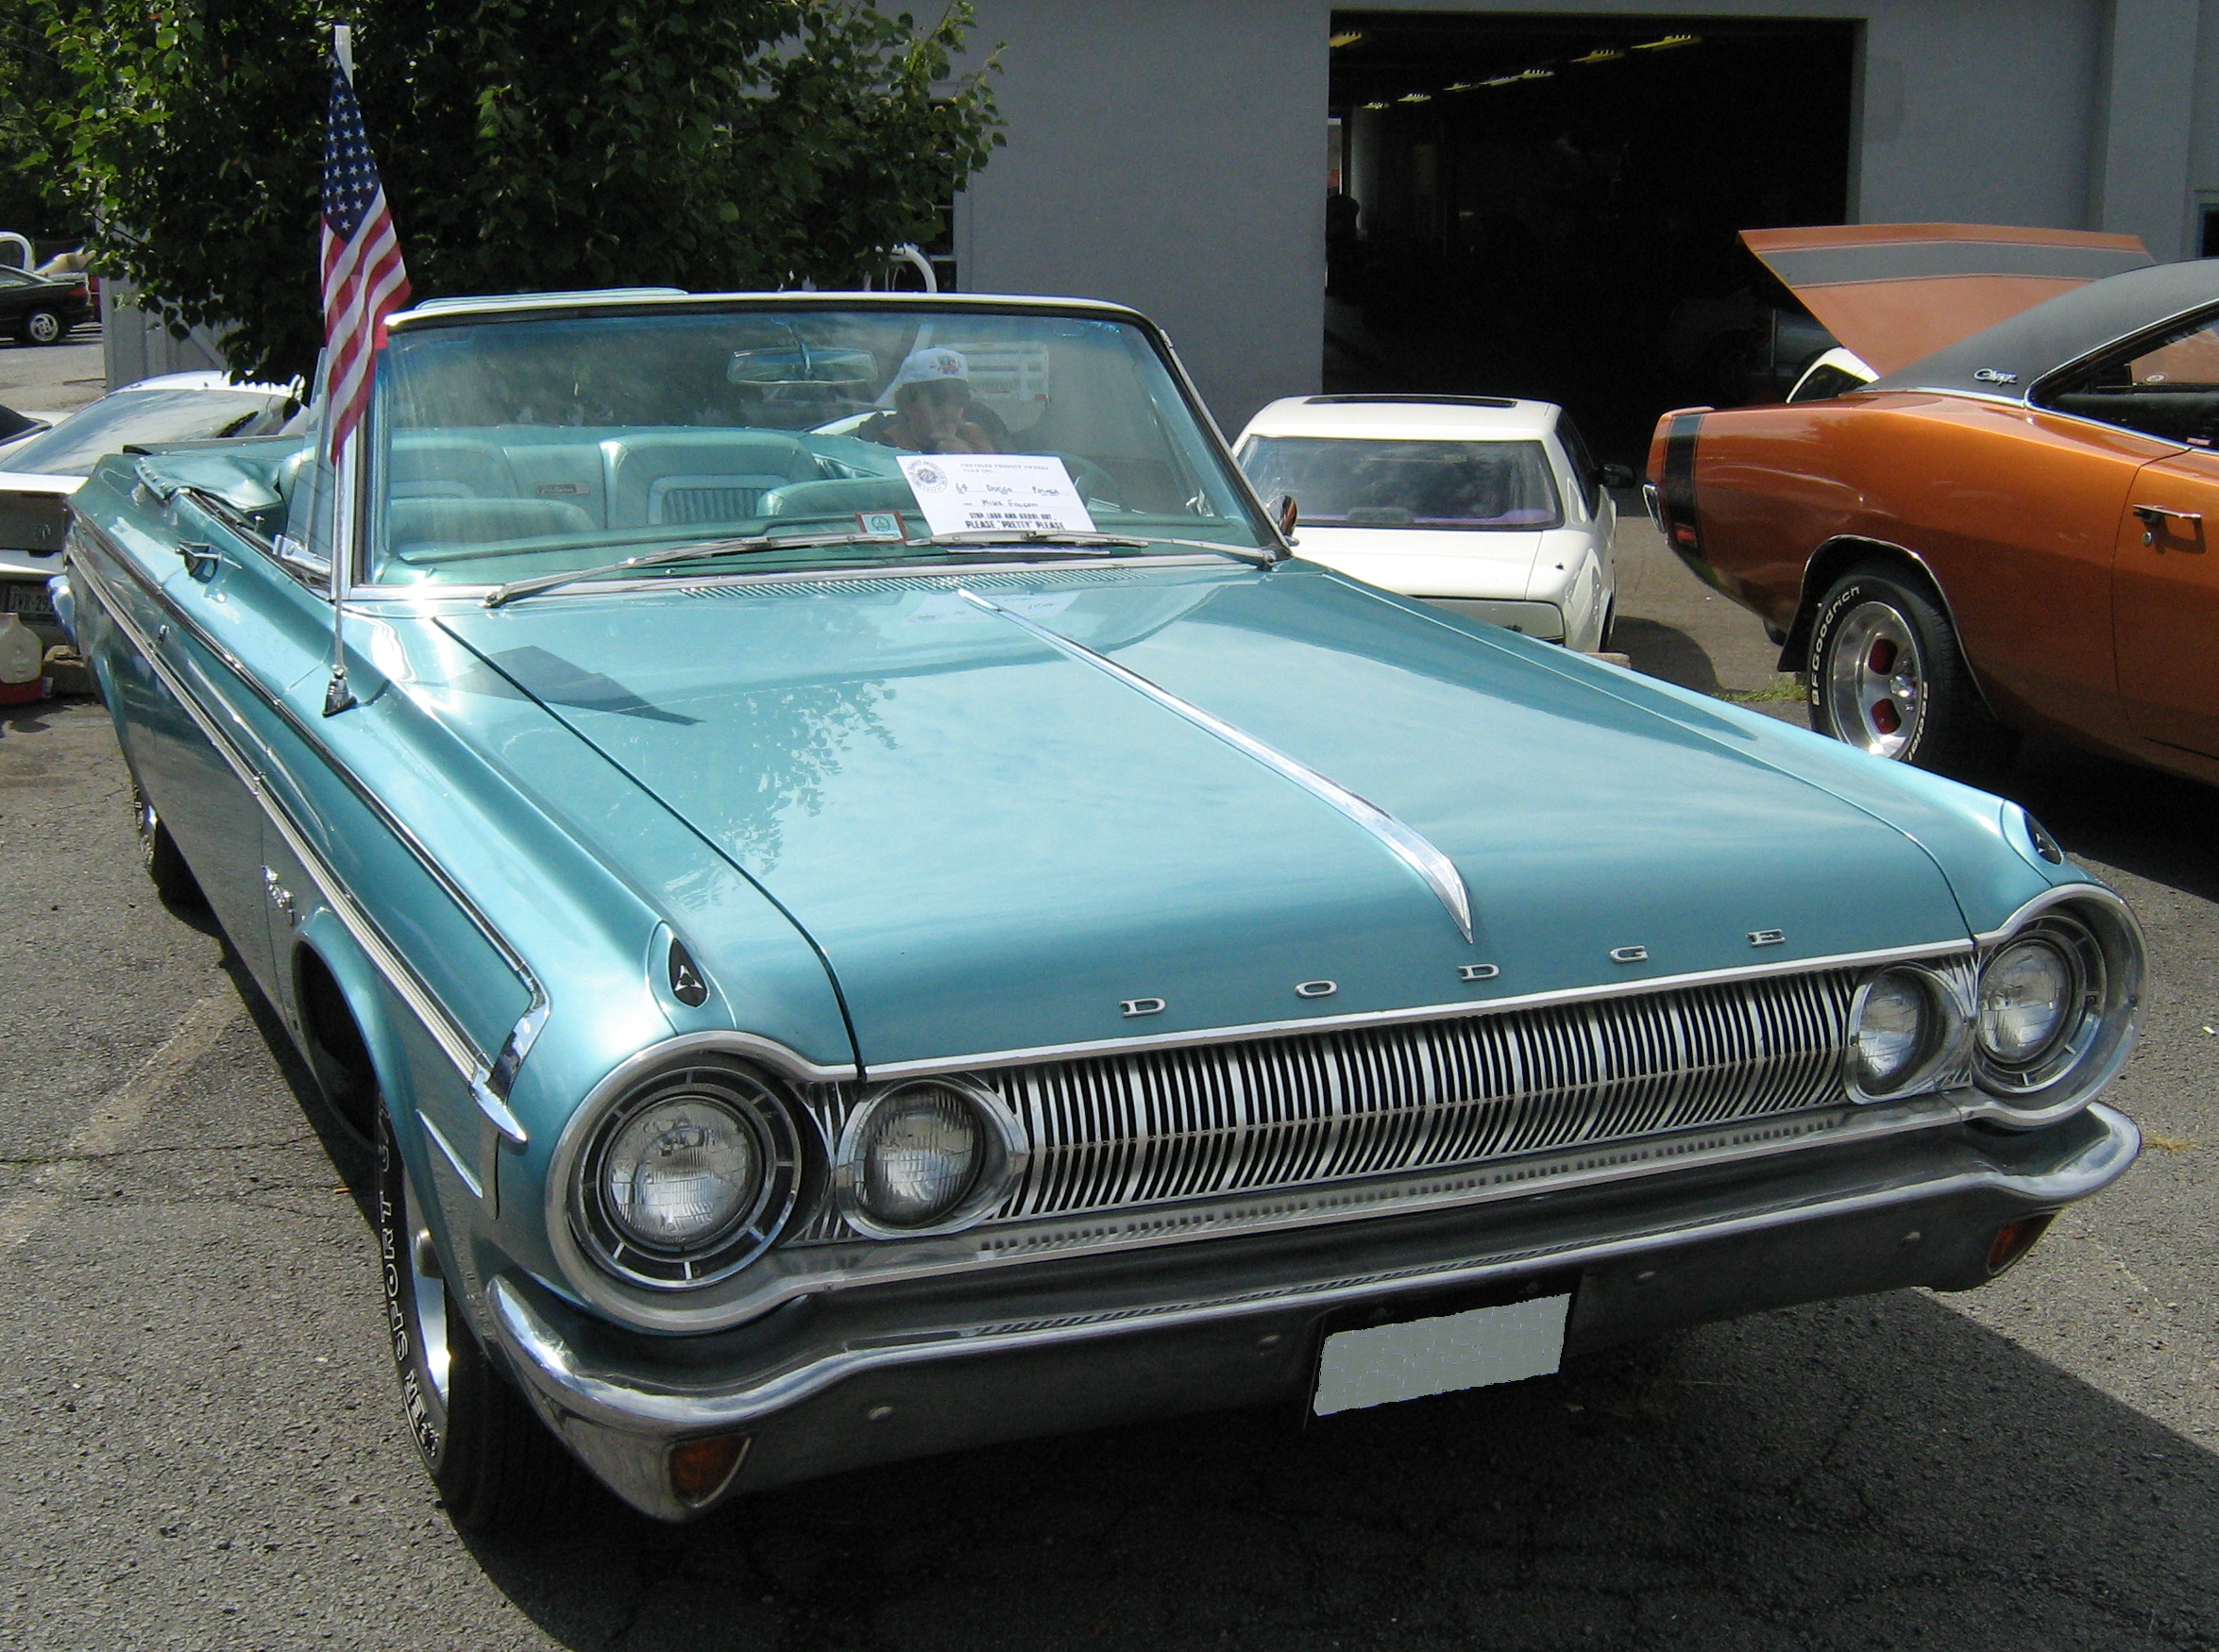 File:1964 Dodge Polara 500 conv front.jpg